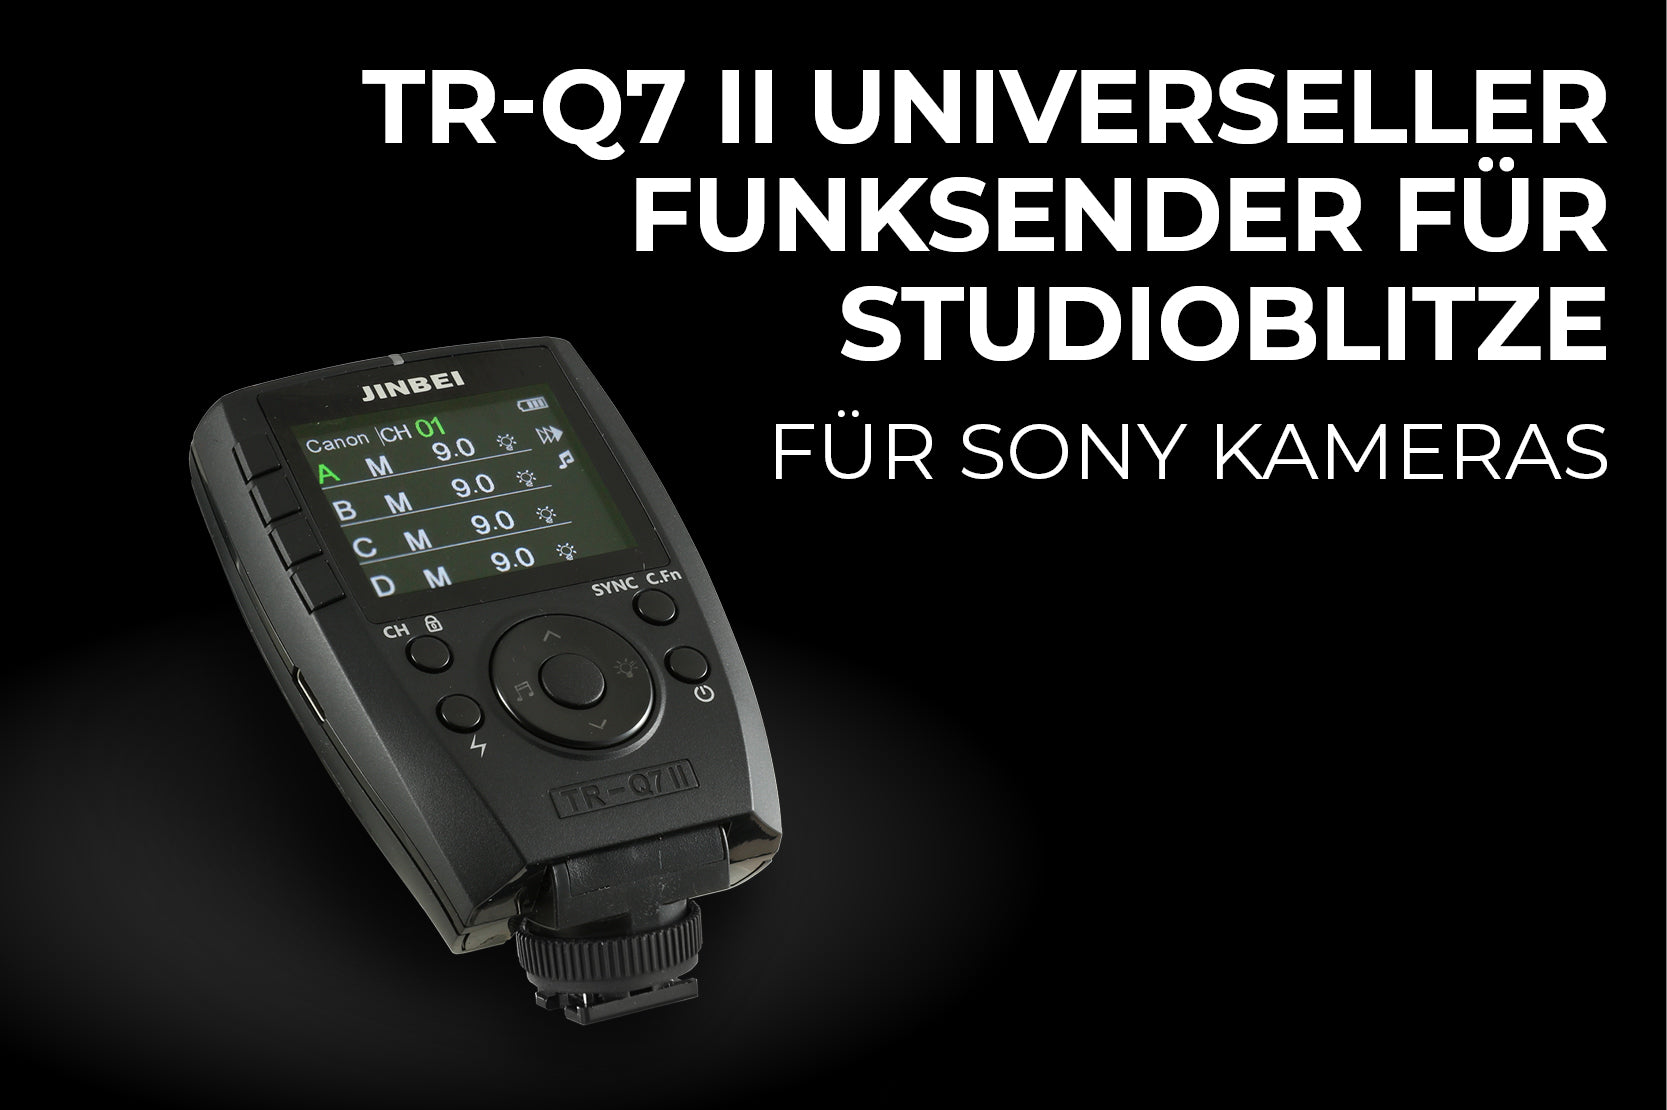 Jinbei TR-Q7II Sony universeller Funksender für Studioblitze